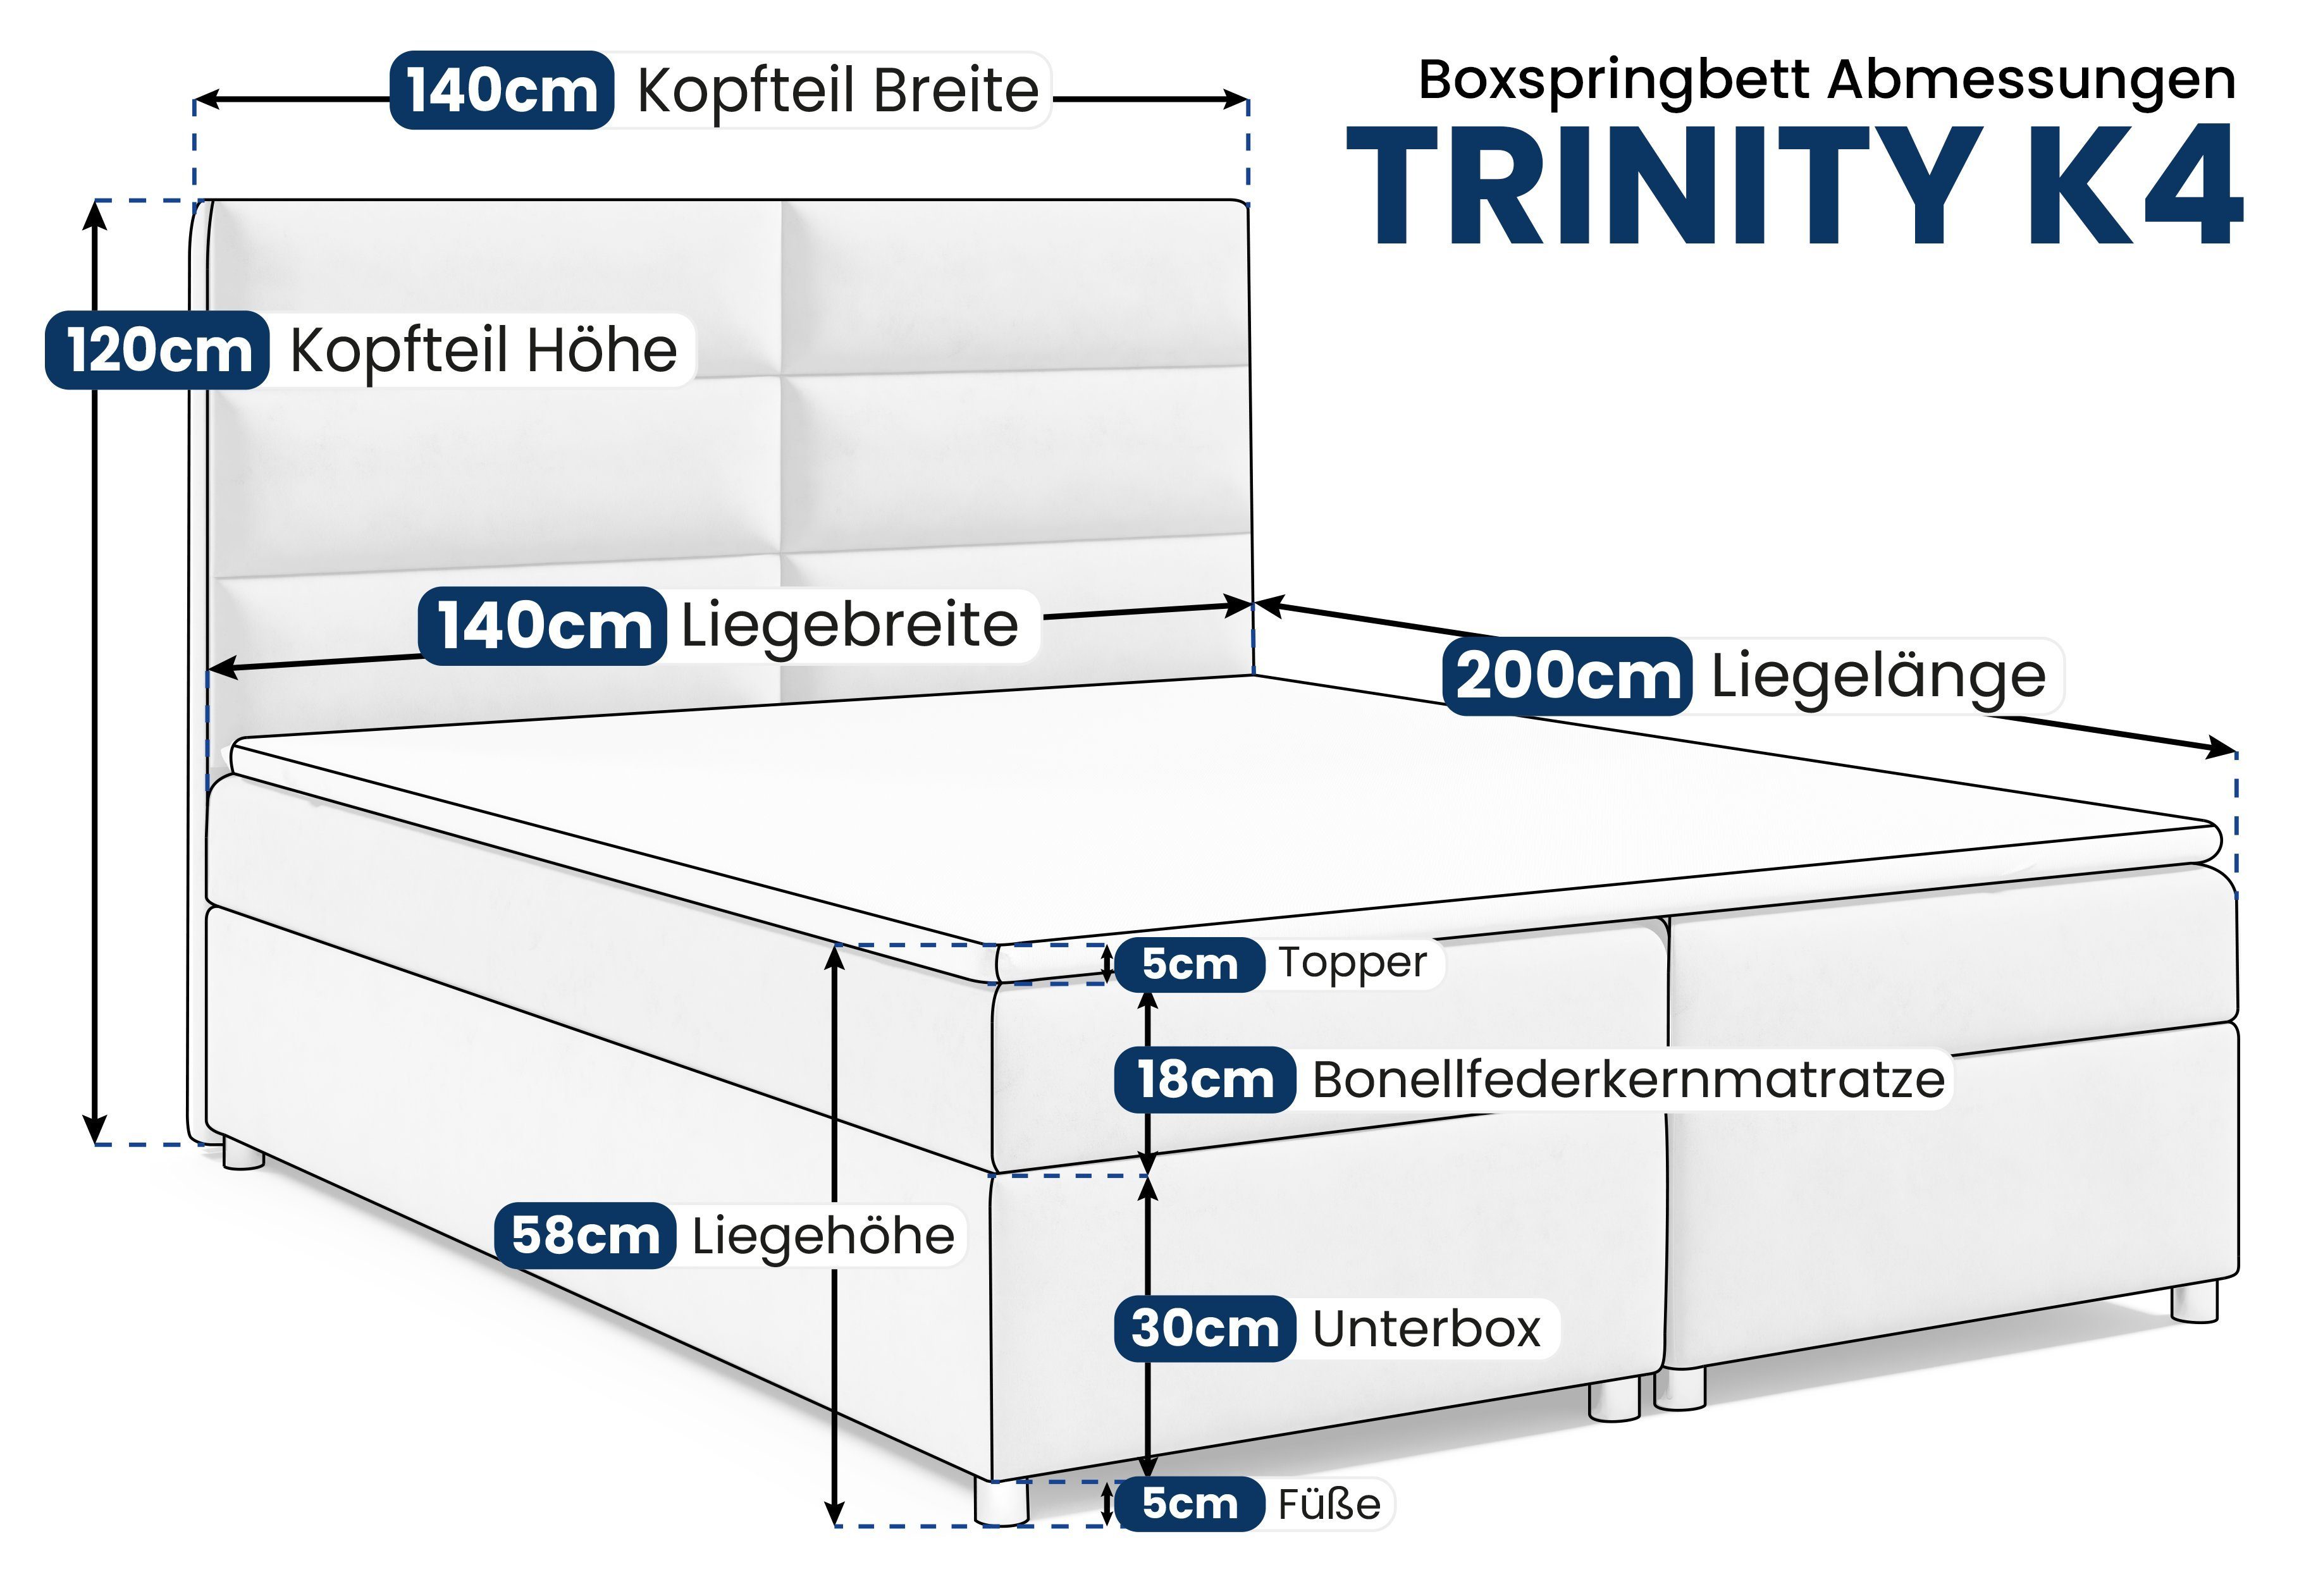 Best for Home Boxspringbett Trinity und mit Topper K4, Braun Bettkasten